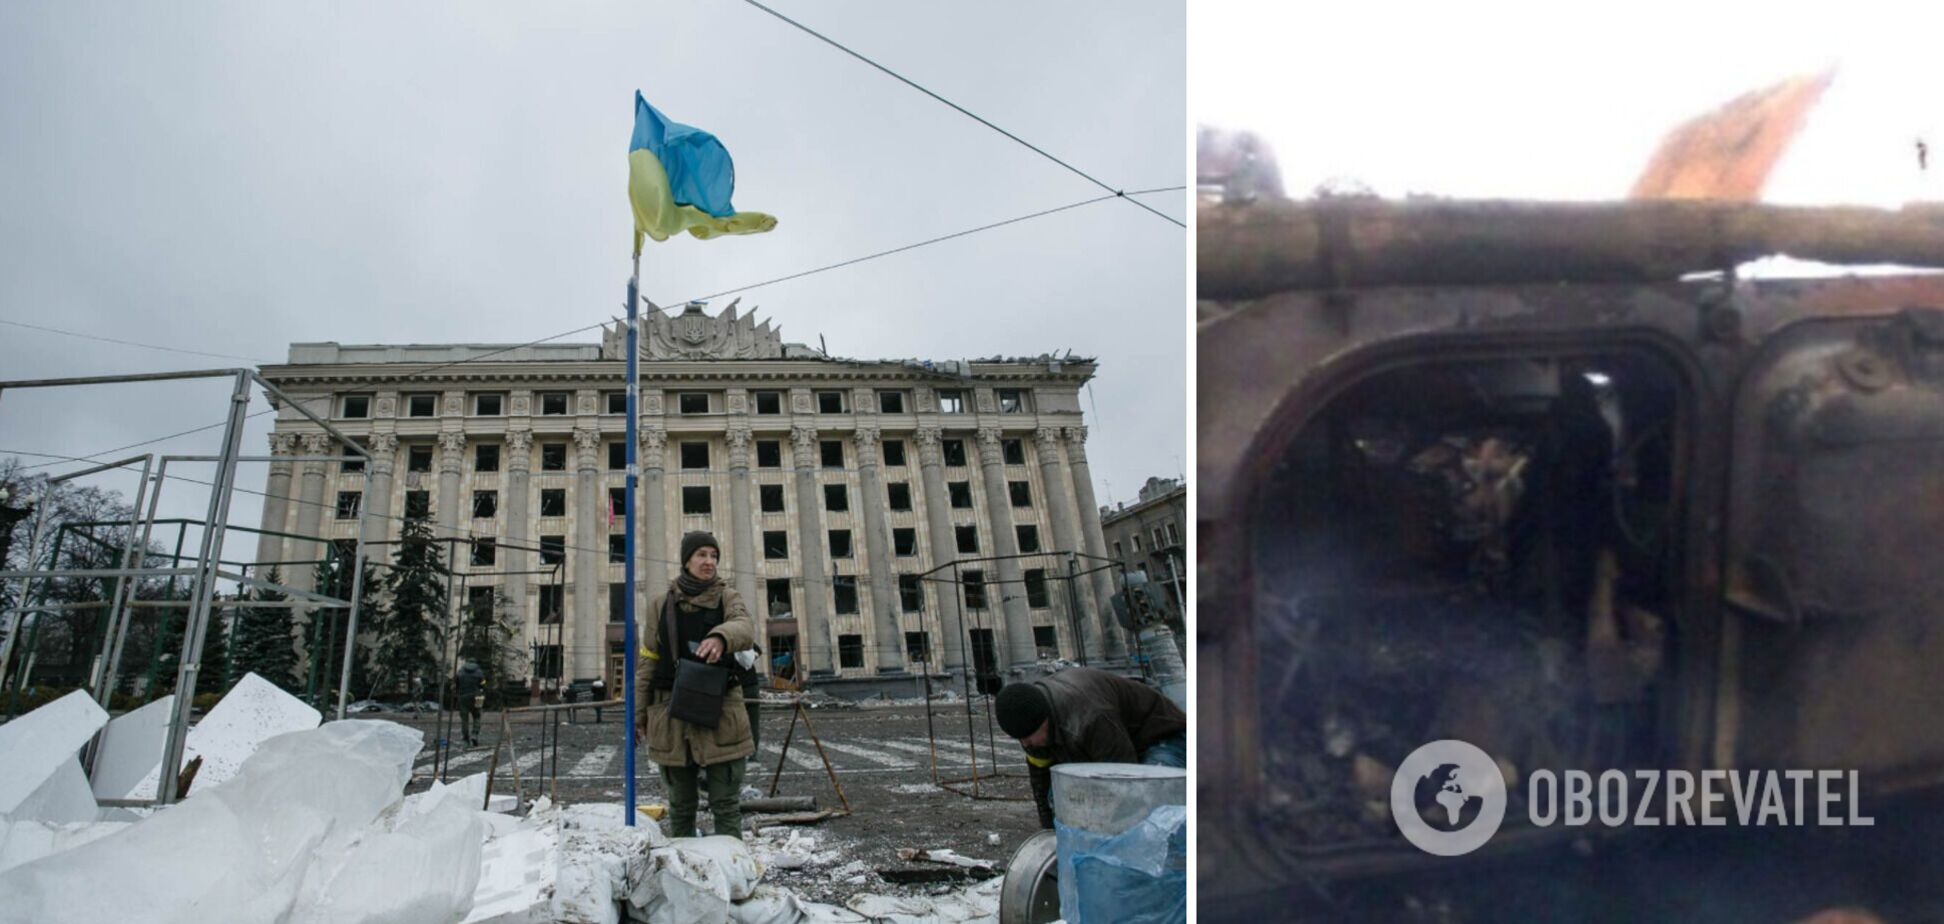 Оборона Харькова не слабеет, попытки штурма заканчиваются, даже не начавшись, – Бутусов